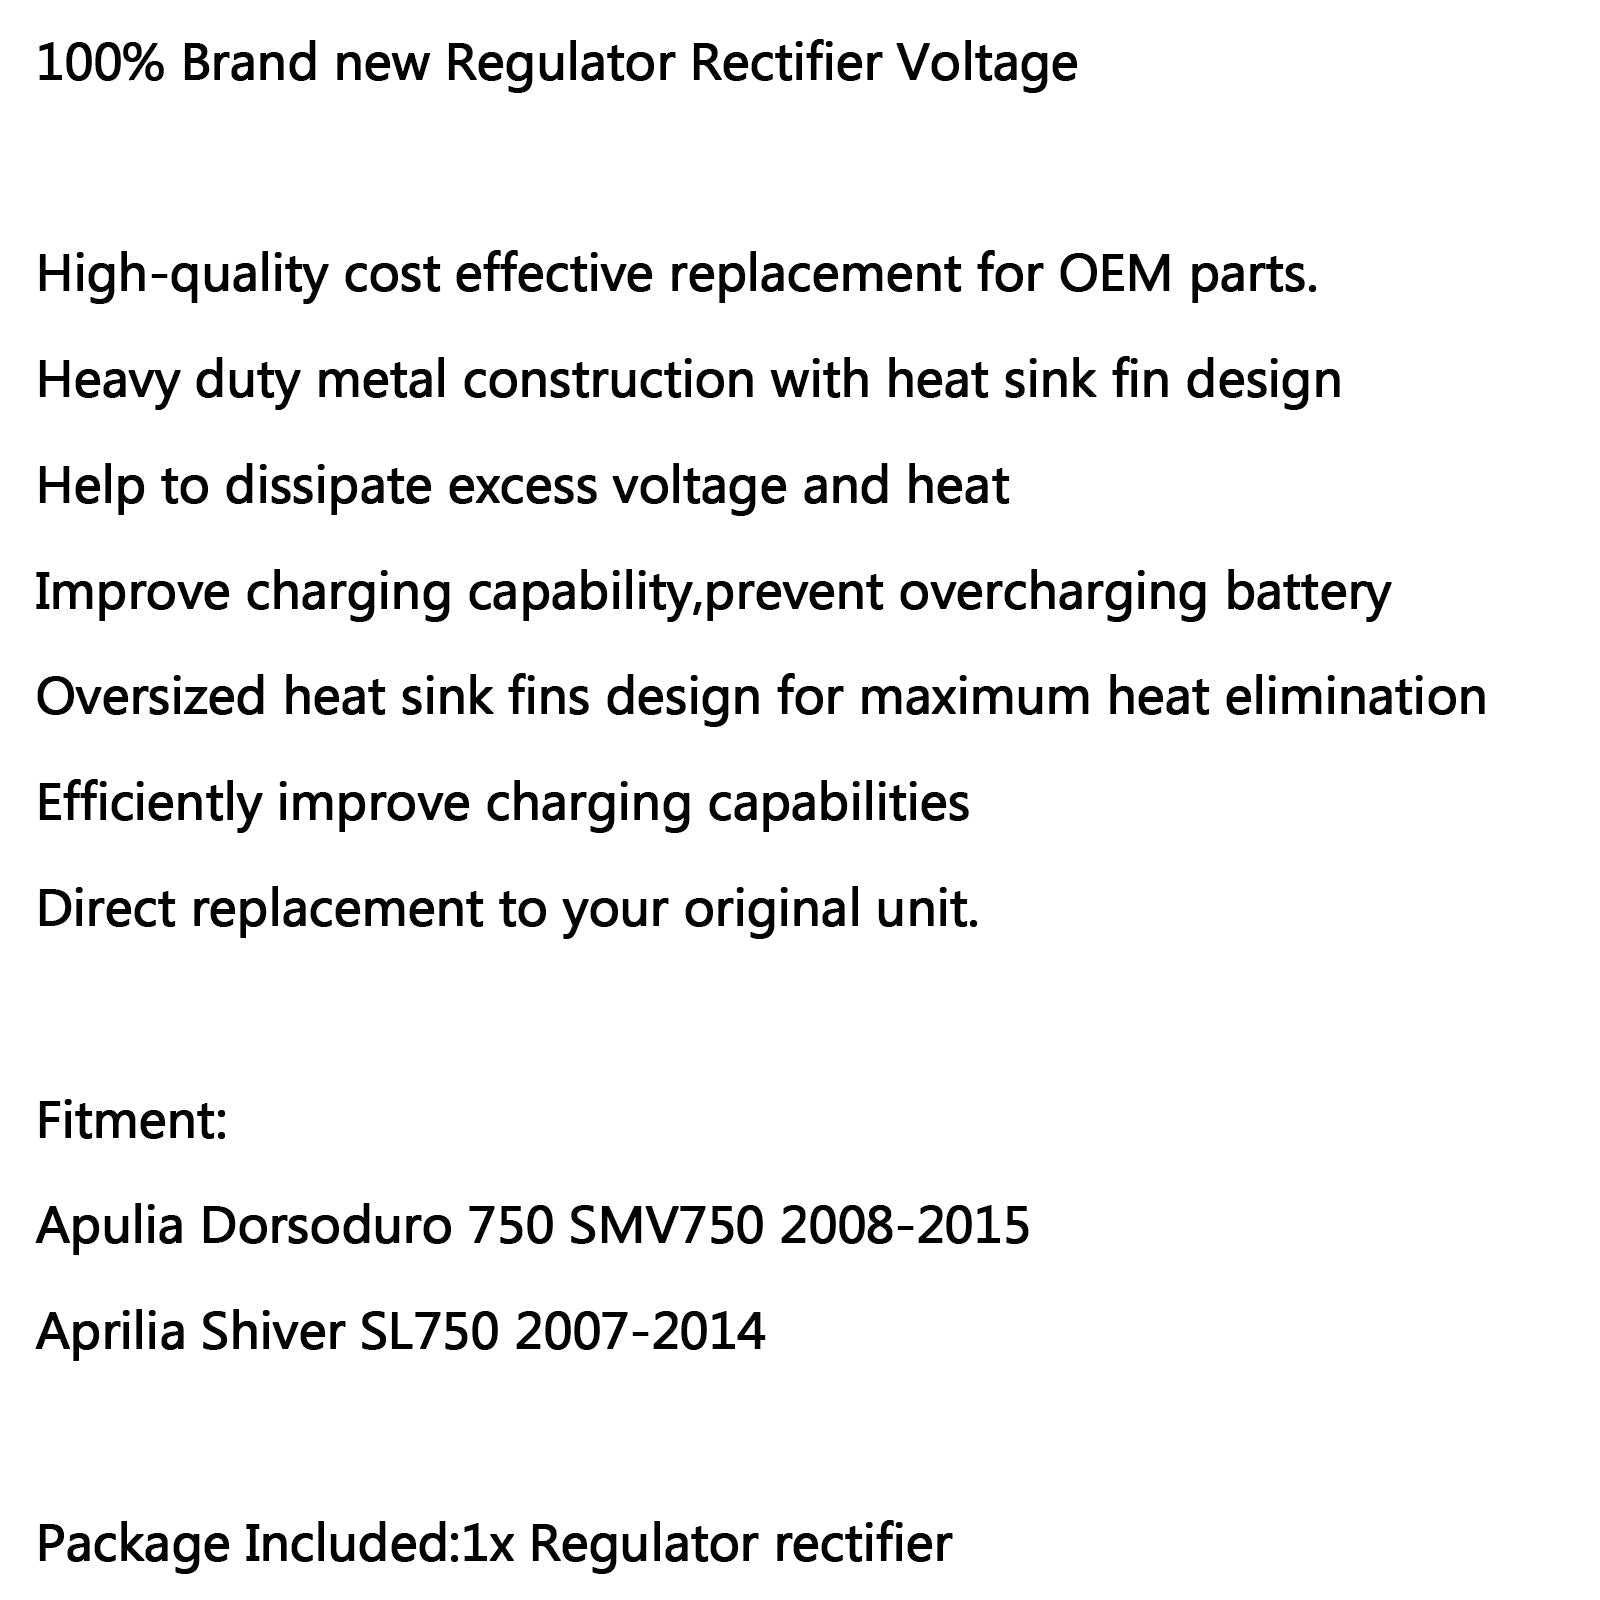 Redresseur régulateur pour Aprilia Shiver SL750 GT 07-16 Dorsoduro 750 SMV750 08-16 générique